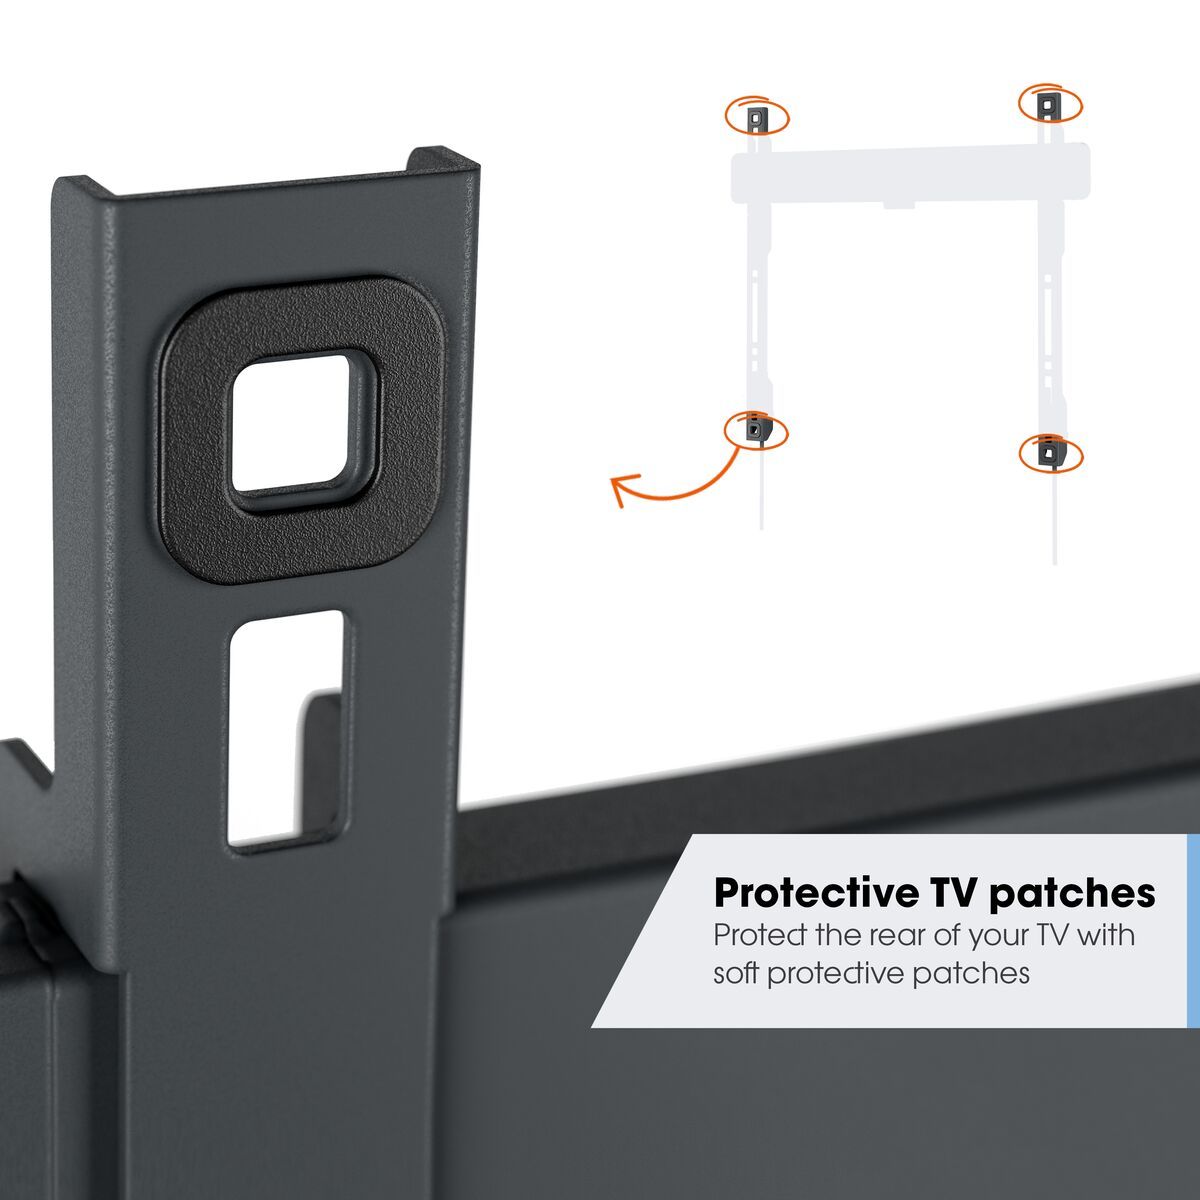 Vogel's TVM 3215 Neigbare TV-Wandhalterung - Geeignet für Fernseher von 19 bis 43 Zoll - Bis zu 20° neigbar - USP